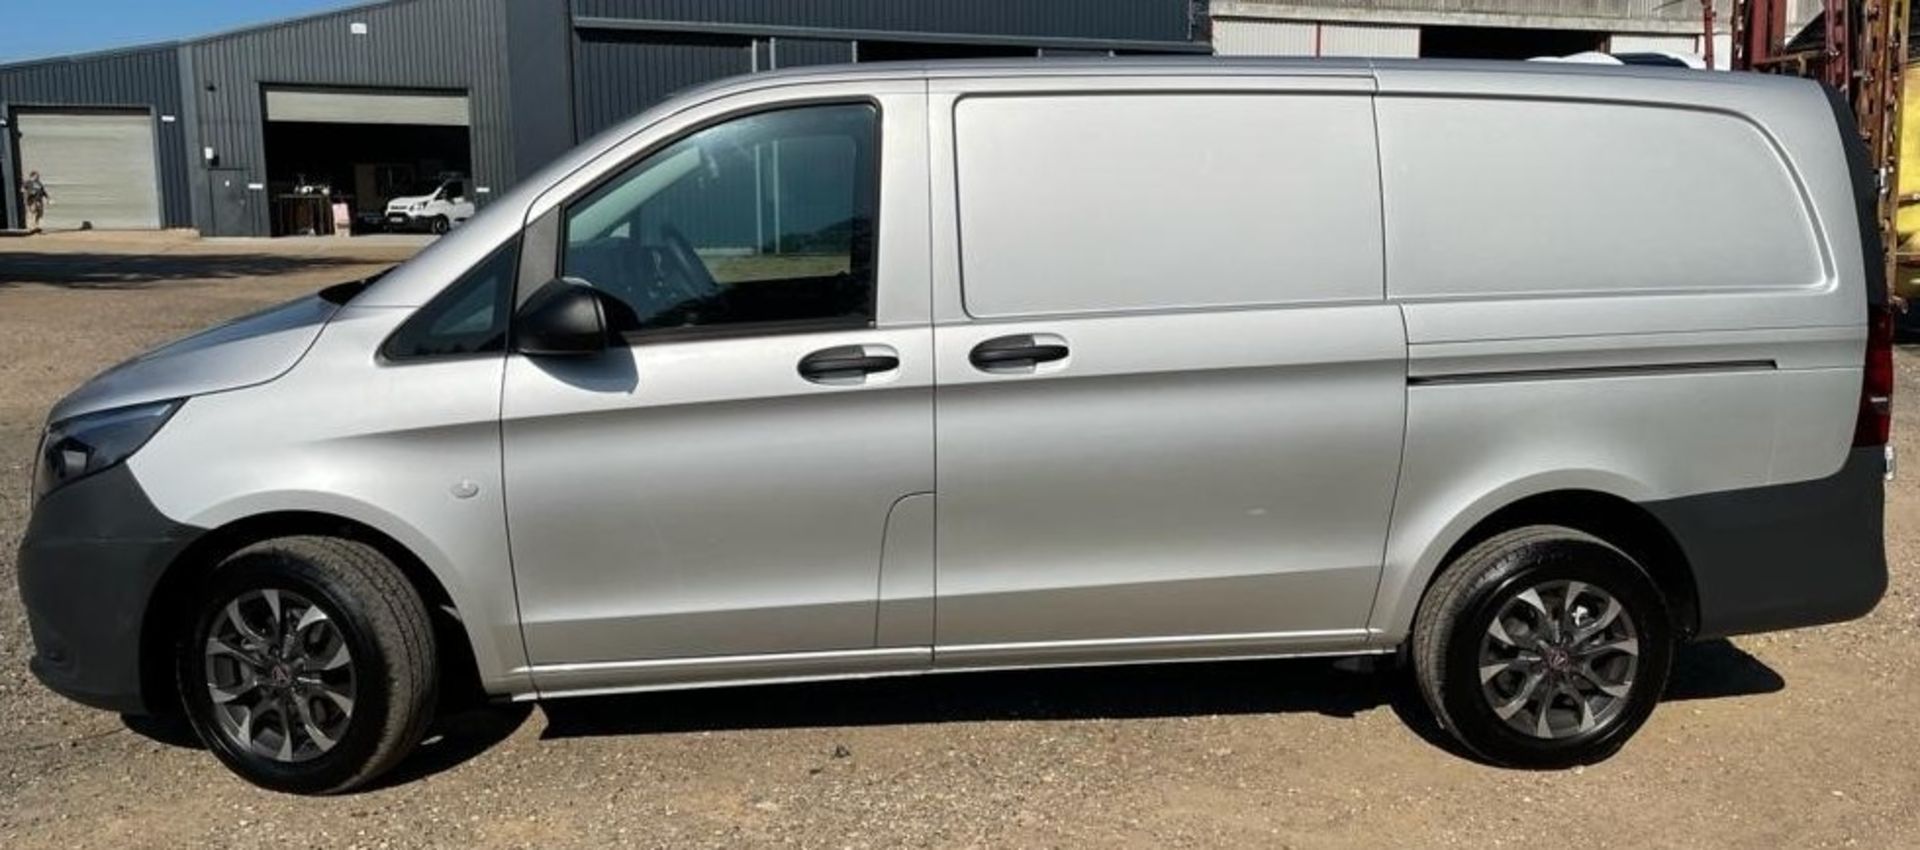 Mercedes Vito Panel Van, Registration Number BM19 WFB, First Registered 28th June 2019, First MOT - Image 6 of 39